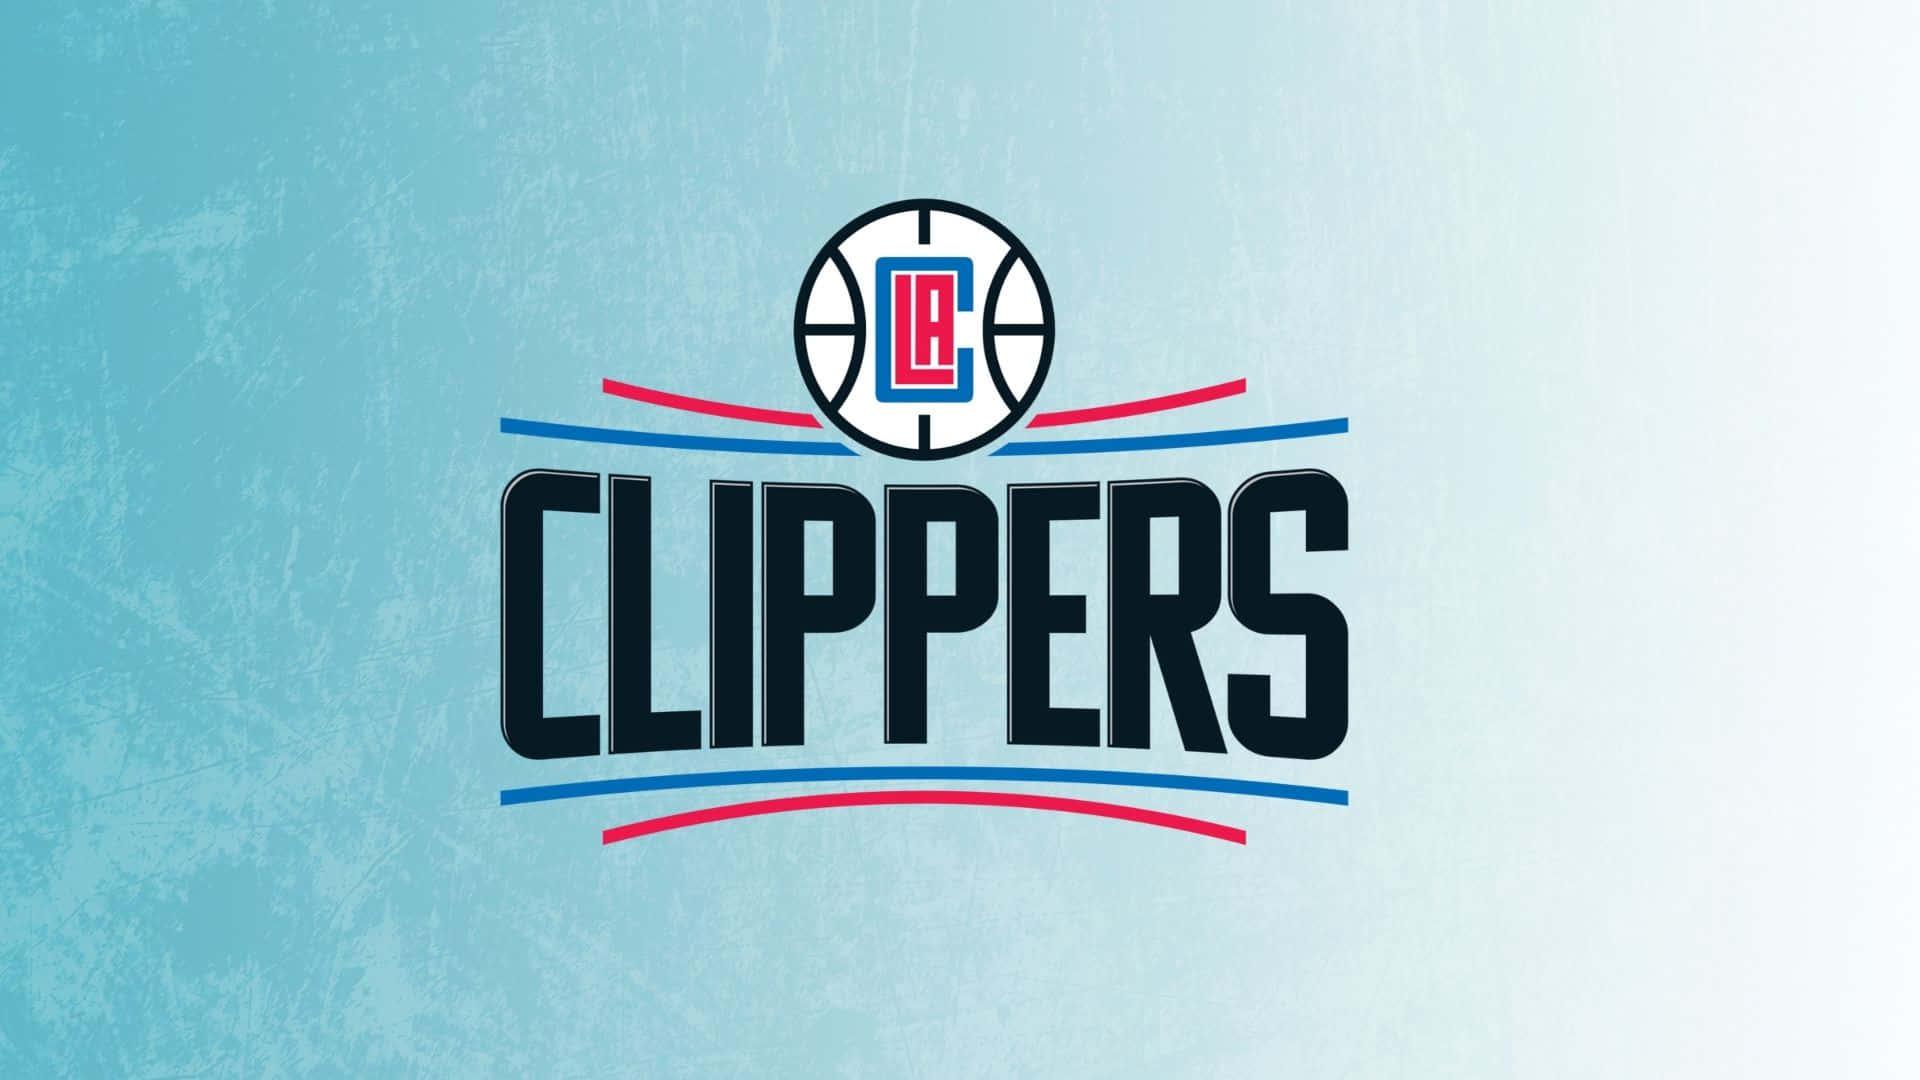 Fejrsuccesen For La Clippers. Wallpaper